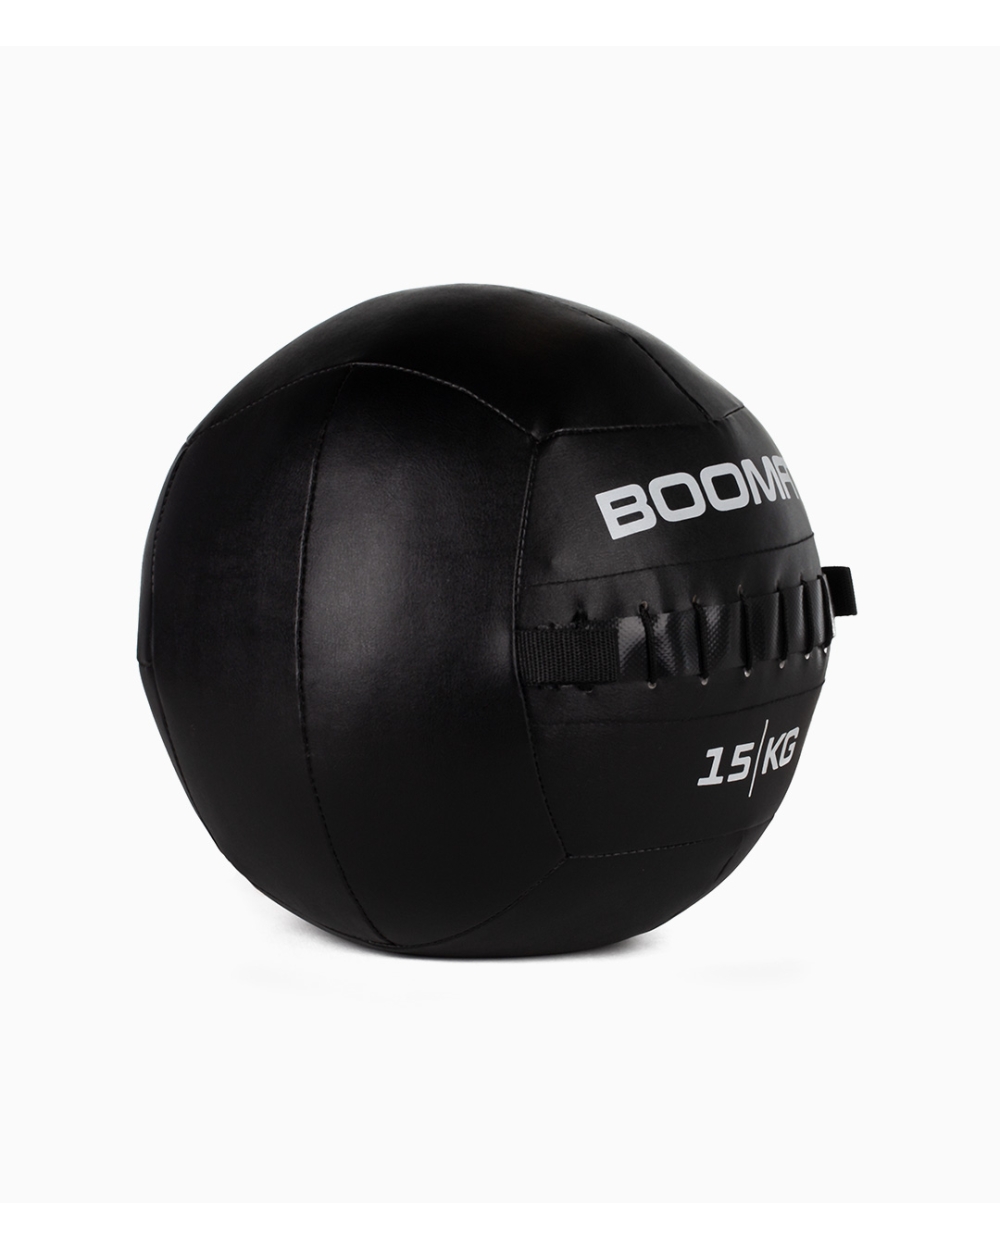 Wall Ball 15kg - Boomfit